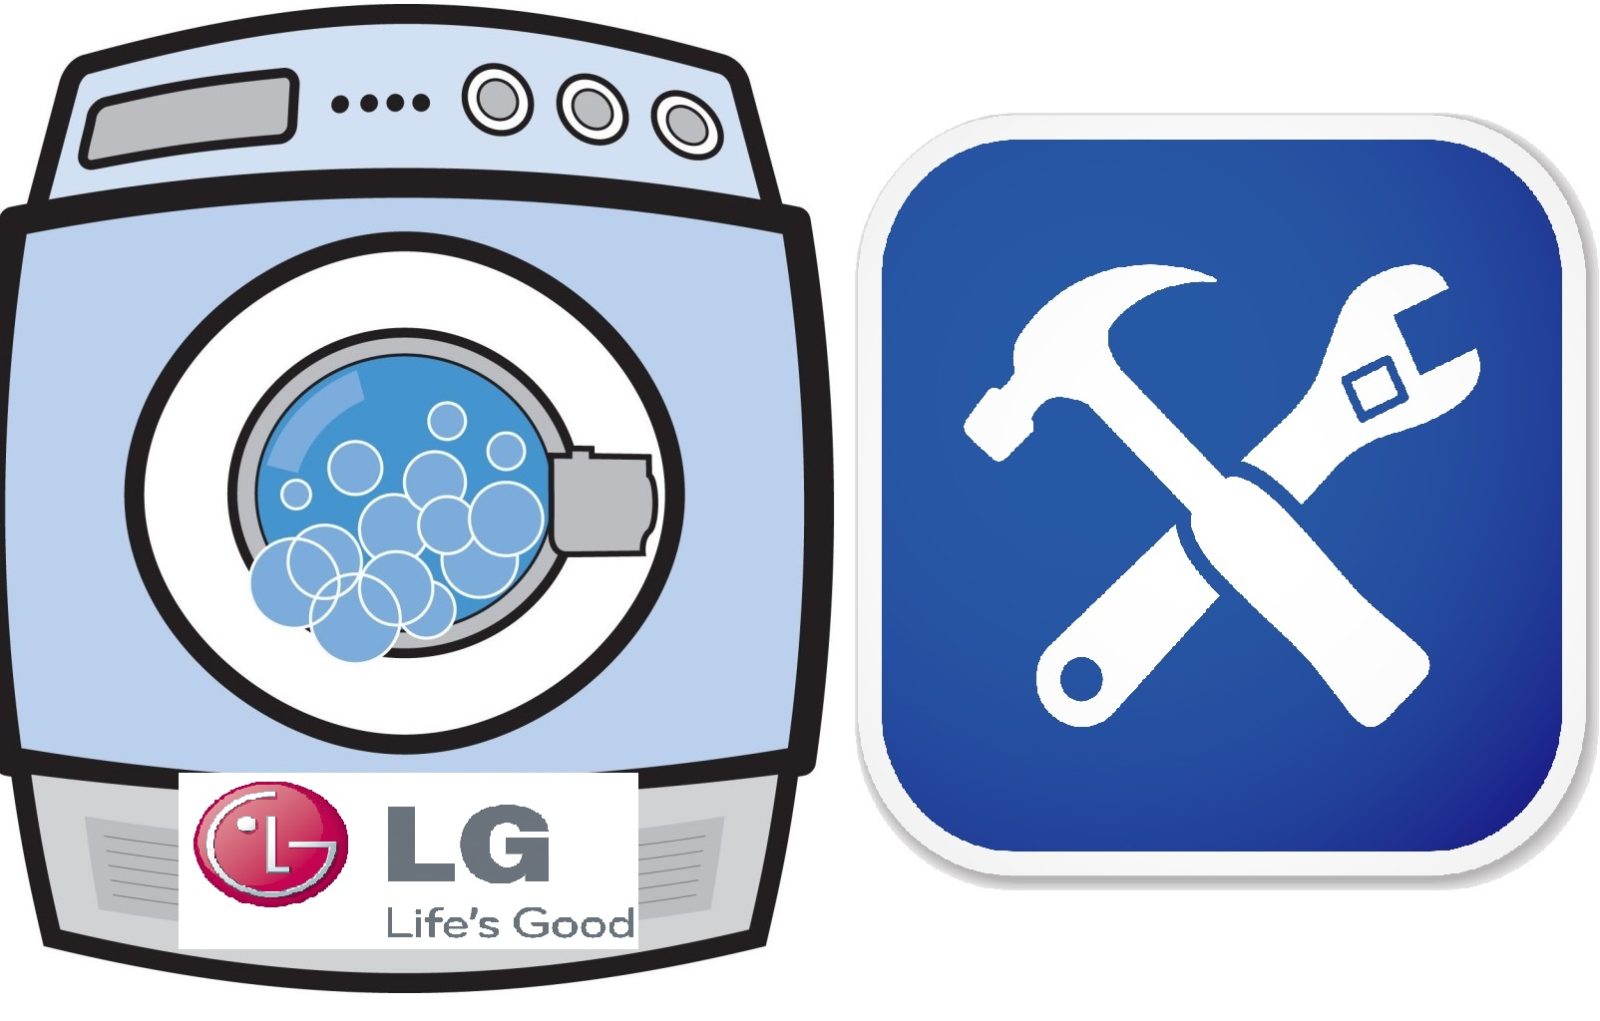 LG Waschmaschine läuft nicht aus oder drückt nicht